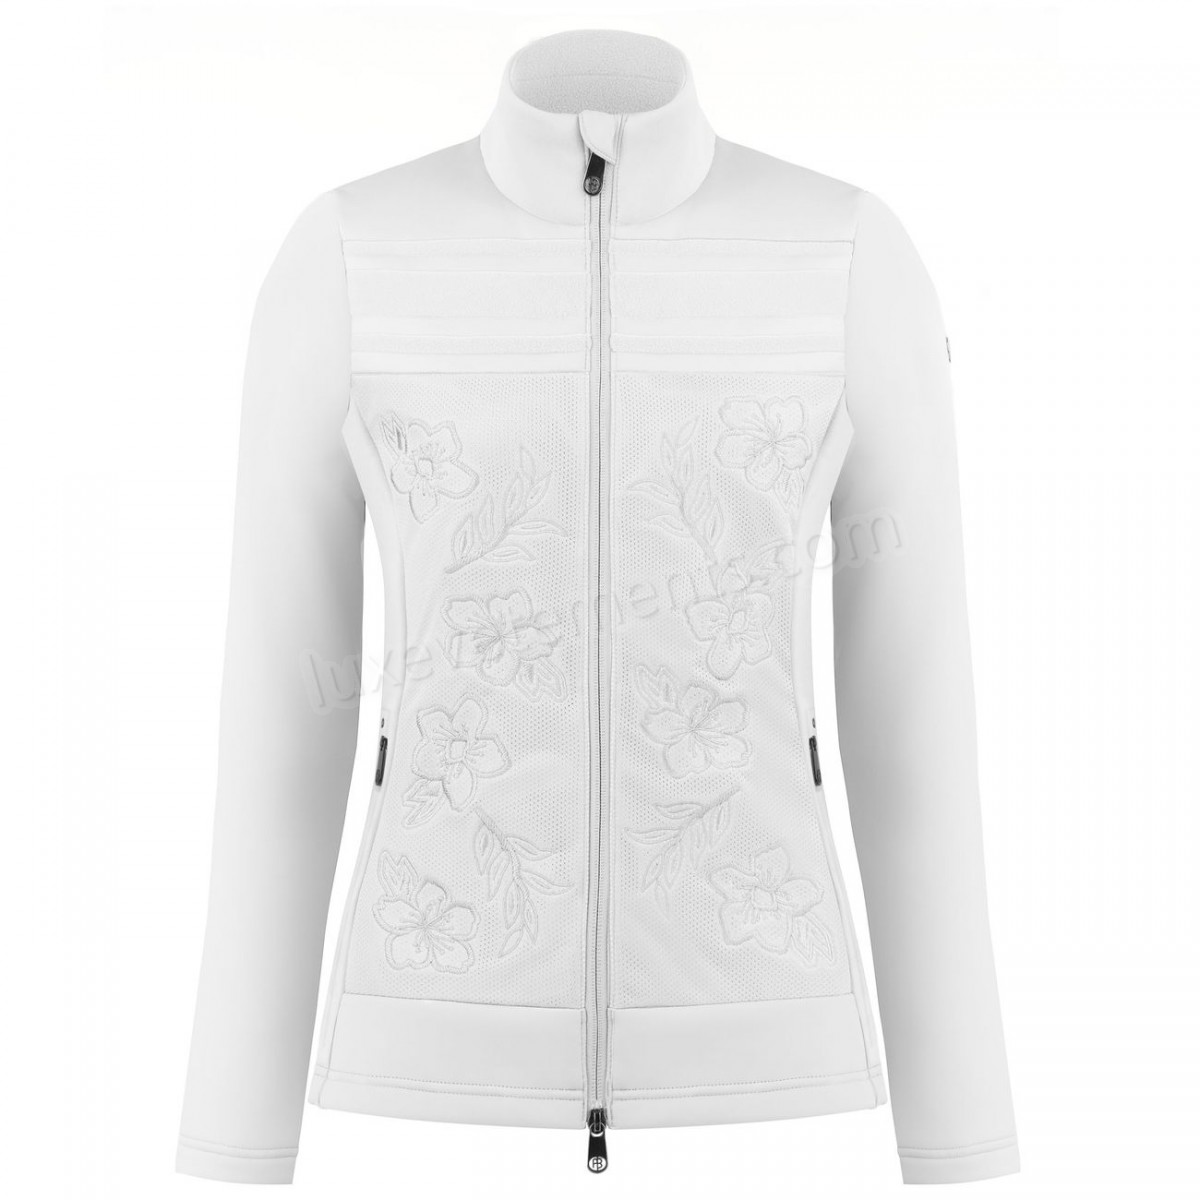 Poivre Blanc-Sports d'hiver femme POIVRE BLANC Veste En Polaire Poivre Blanc Hybrid Stretch Fleece Jacket 1605 White Femme Vente en ligne - -0